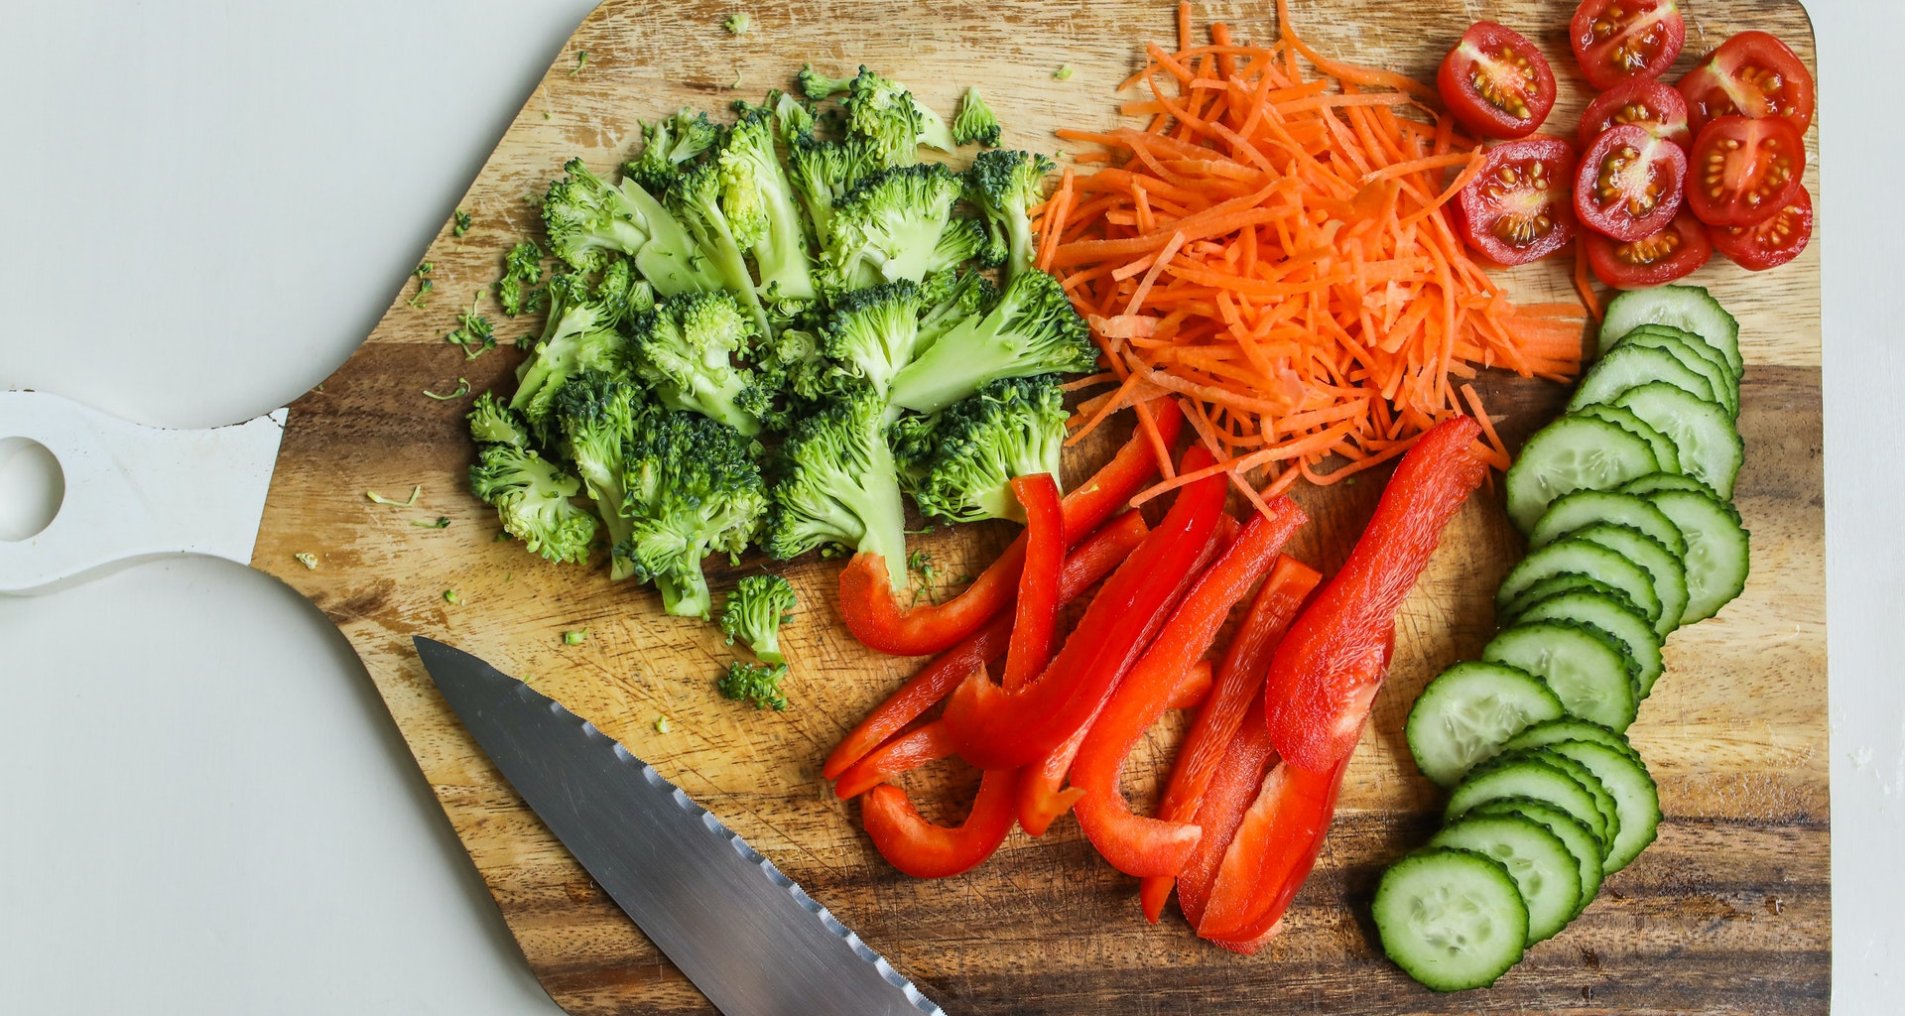 Брокколи, морковь и сладкий перец более полезны после приготовления.